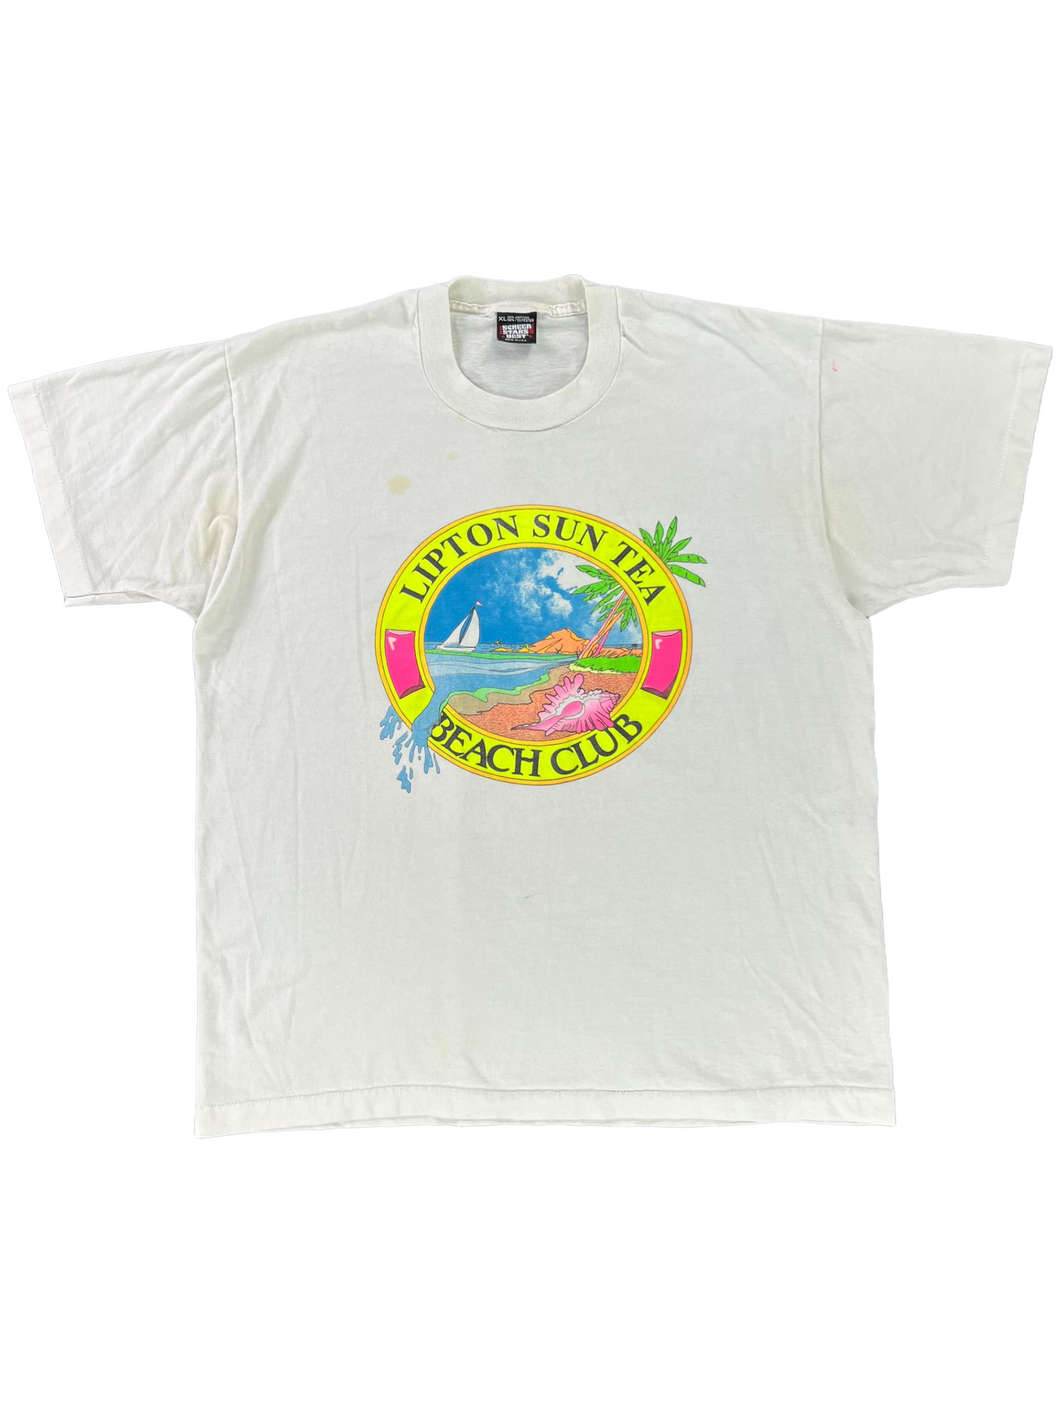 Vintage 90s Lipton sun tea beach club graphic tee (L/XL)